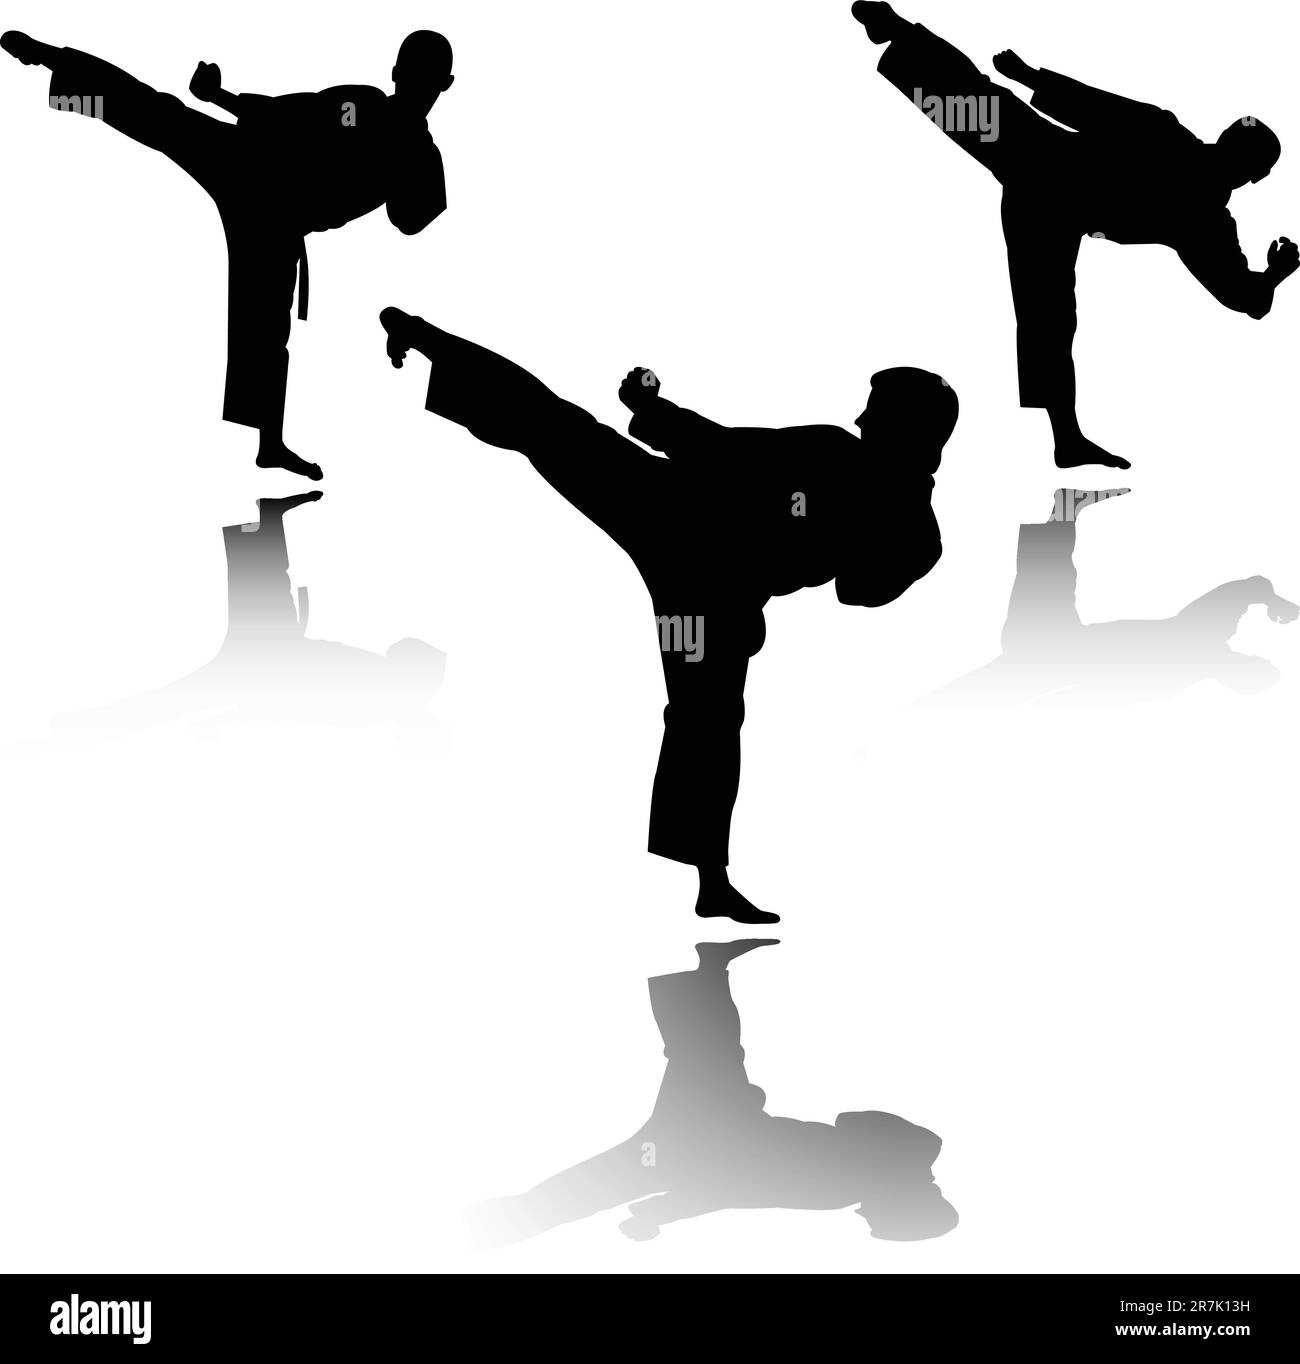 illustrazione del caccia di karate - vettore Illustrazione Vettoriale